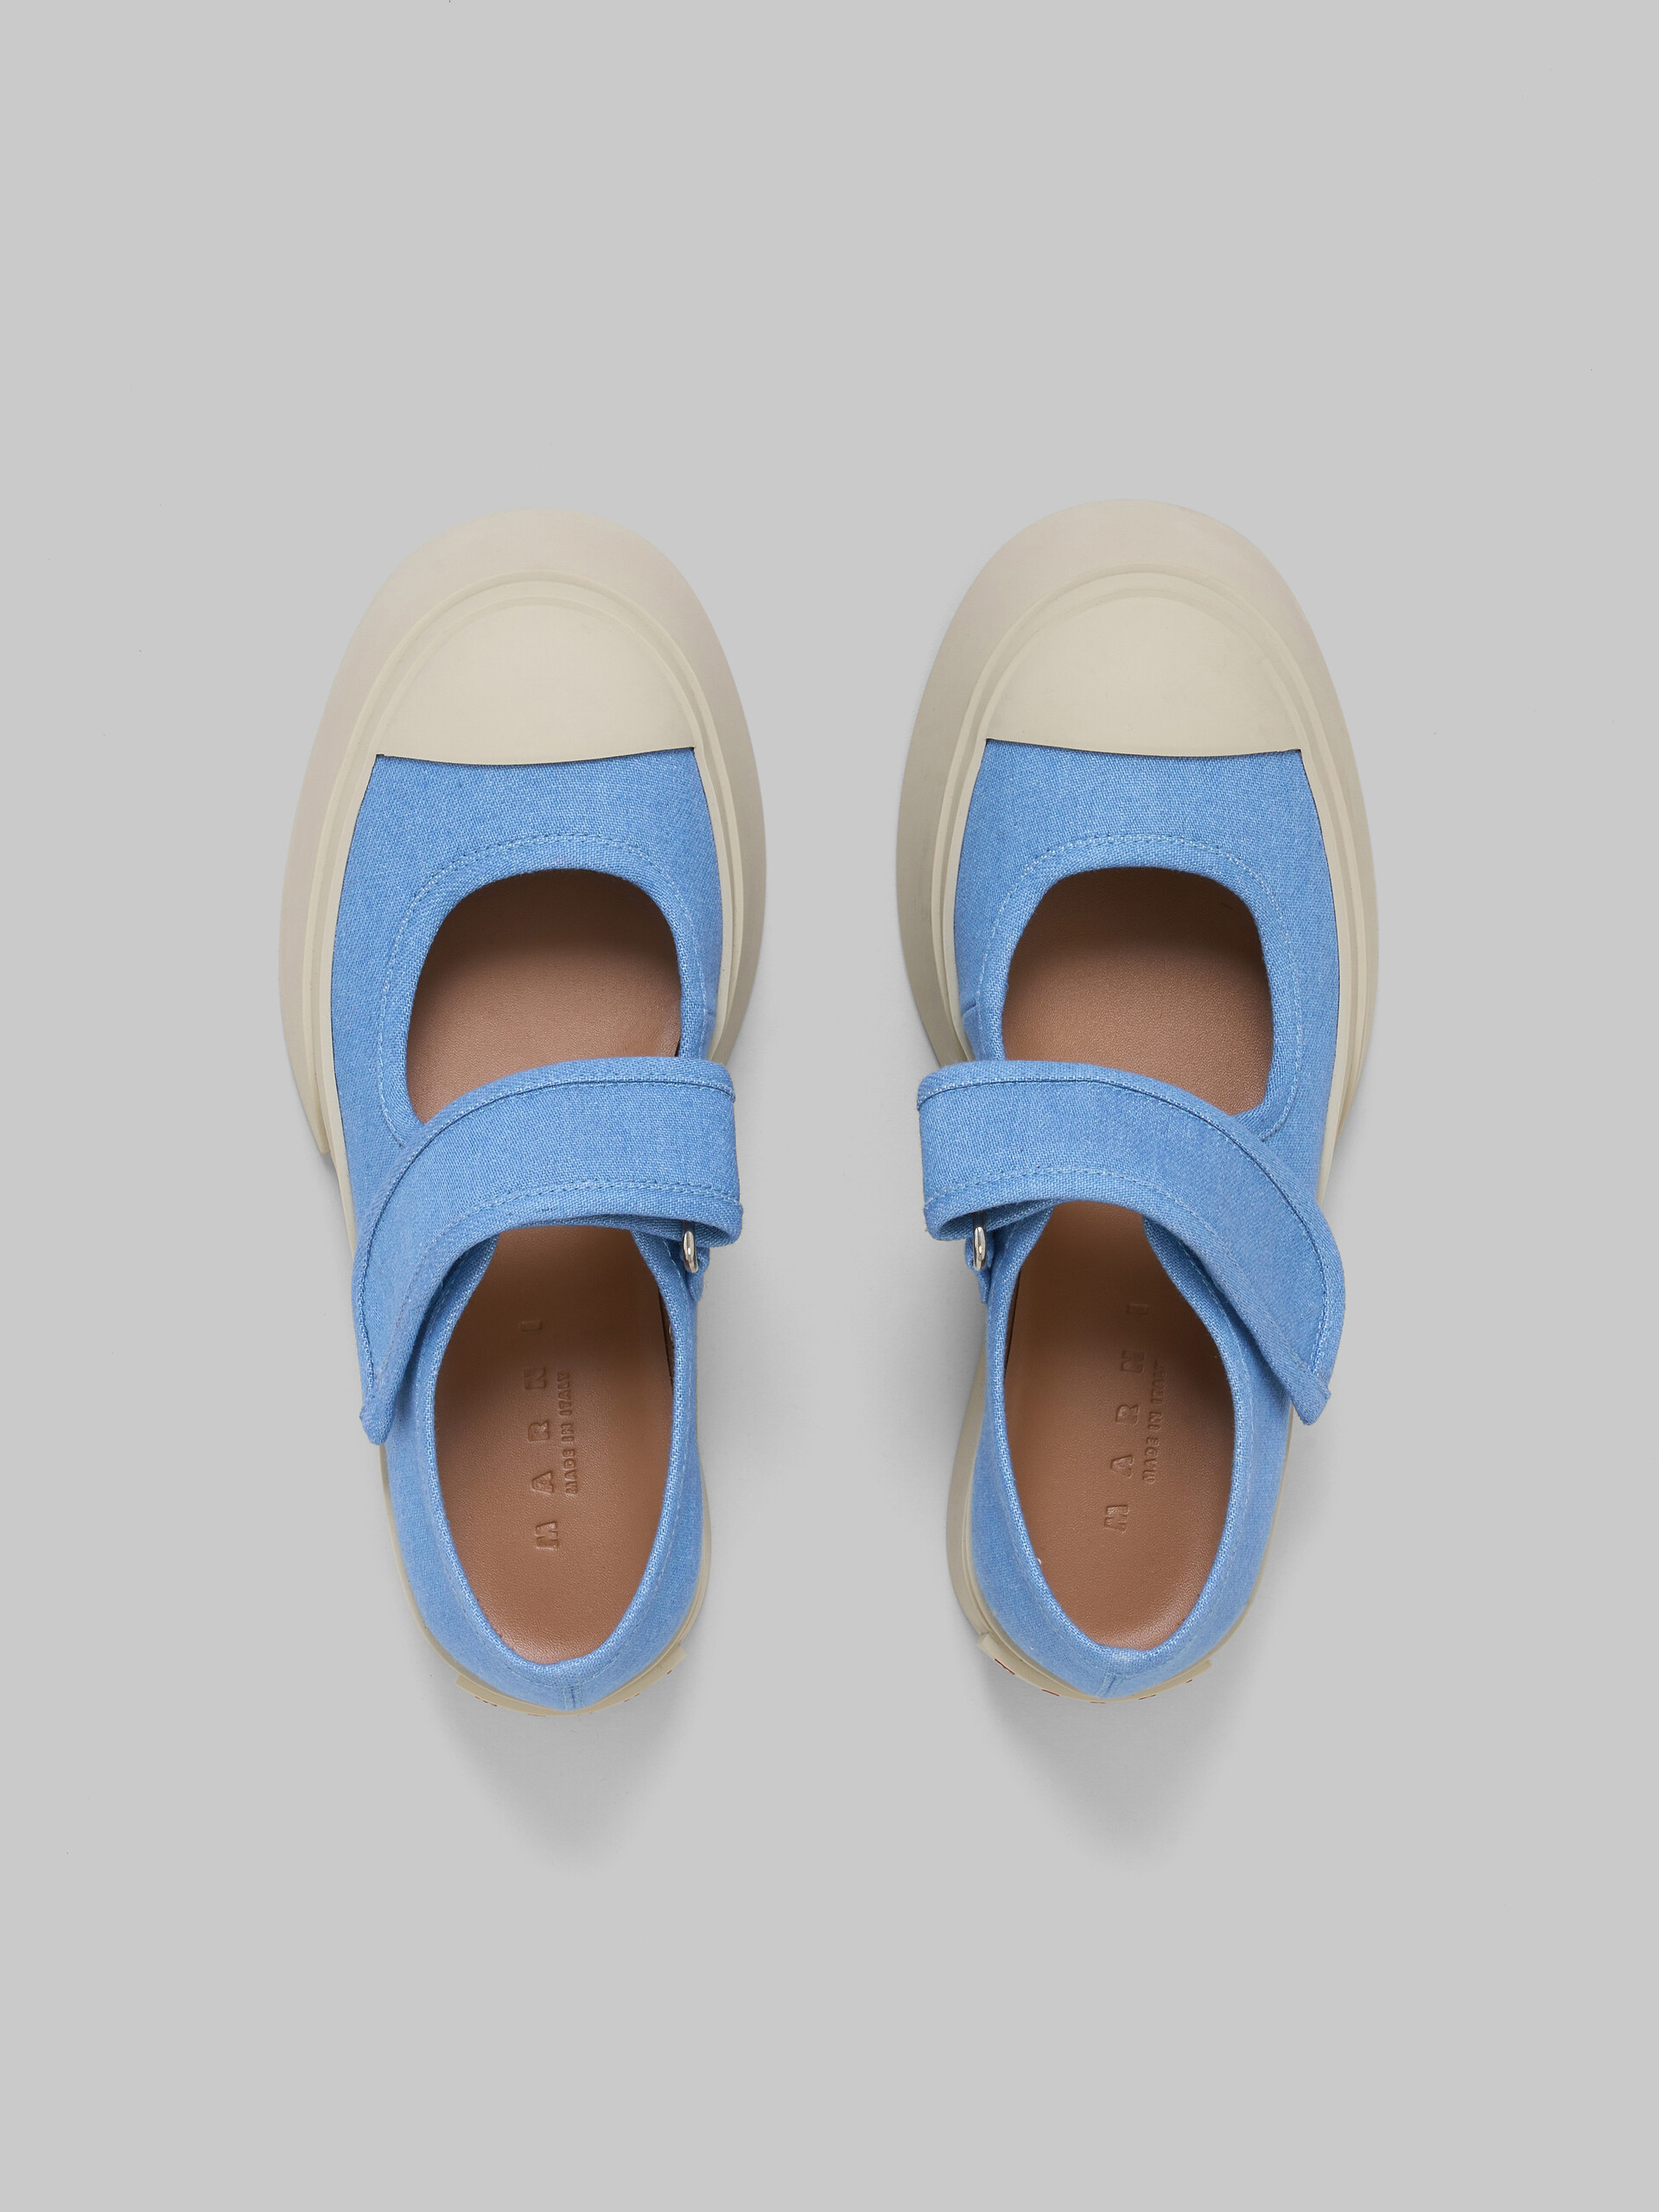 Sneakers Mary Jane en denim bleu clair - Sneakers - Image 4